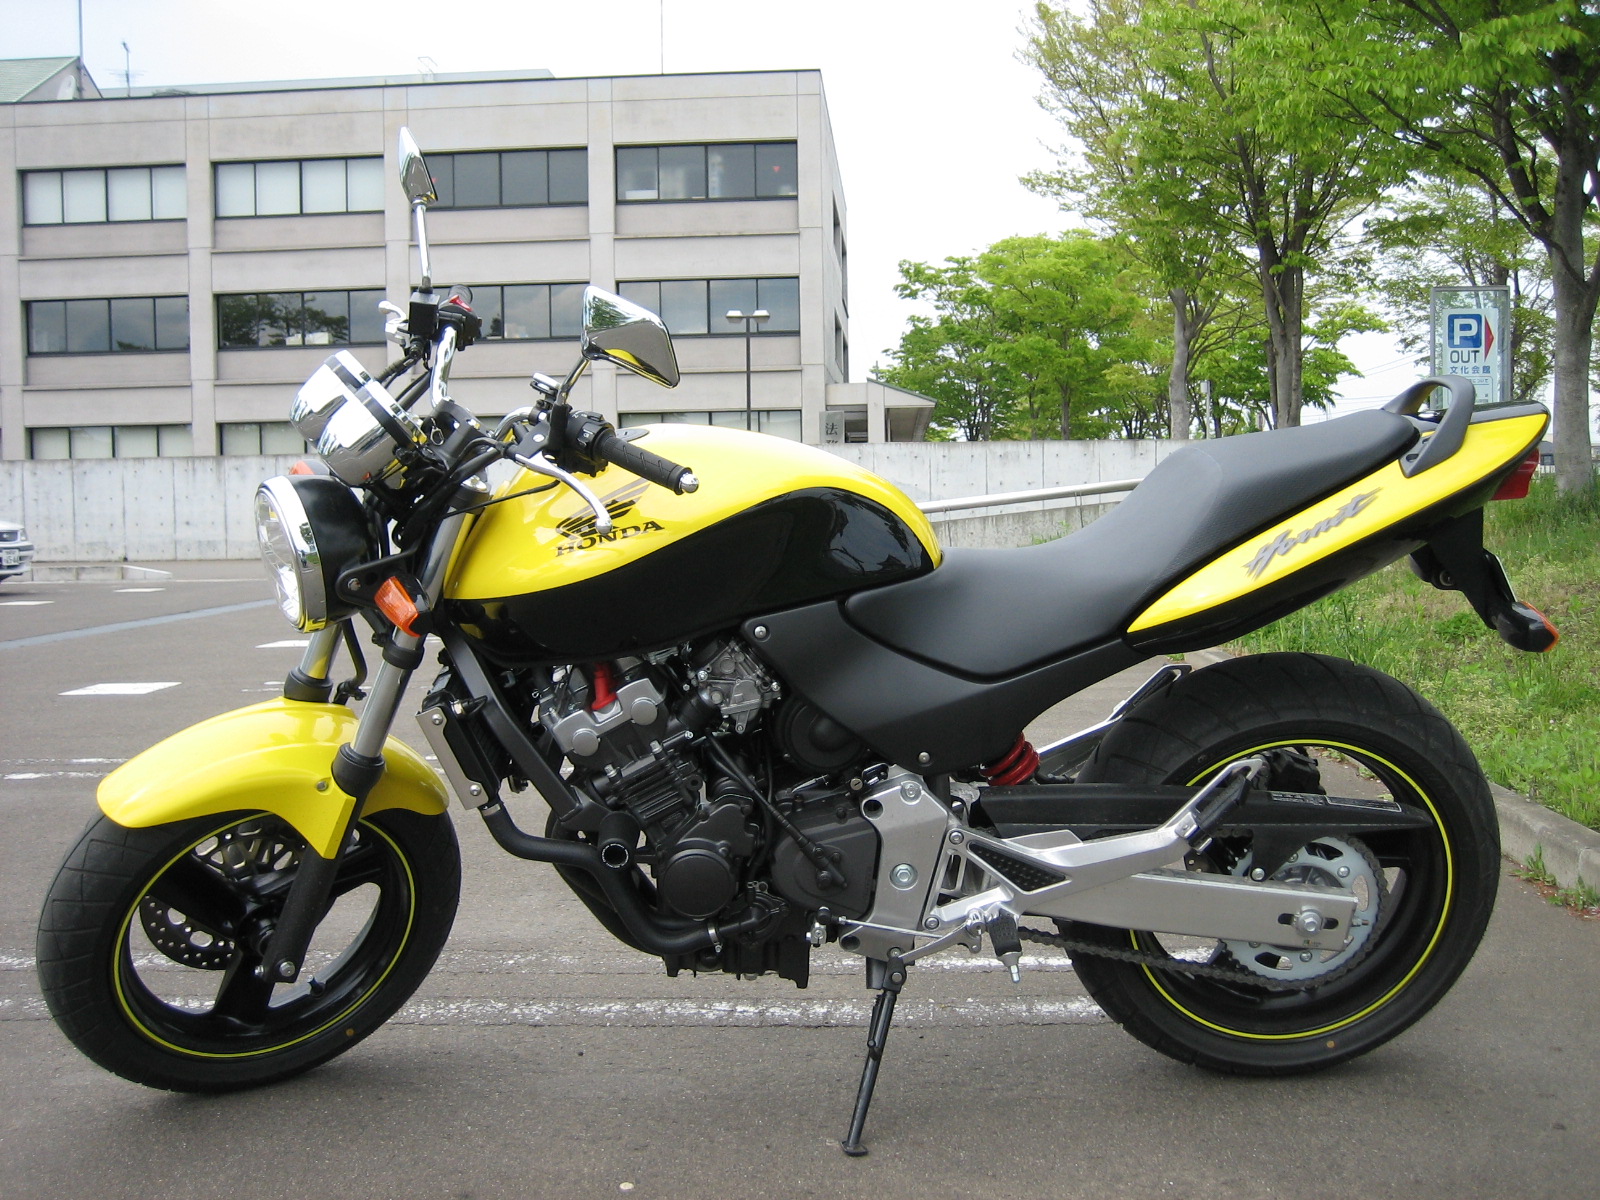 Honda cb250f - honda cb250f